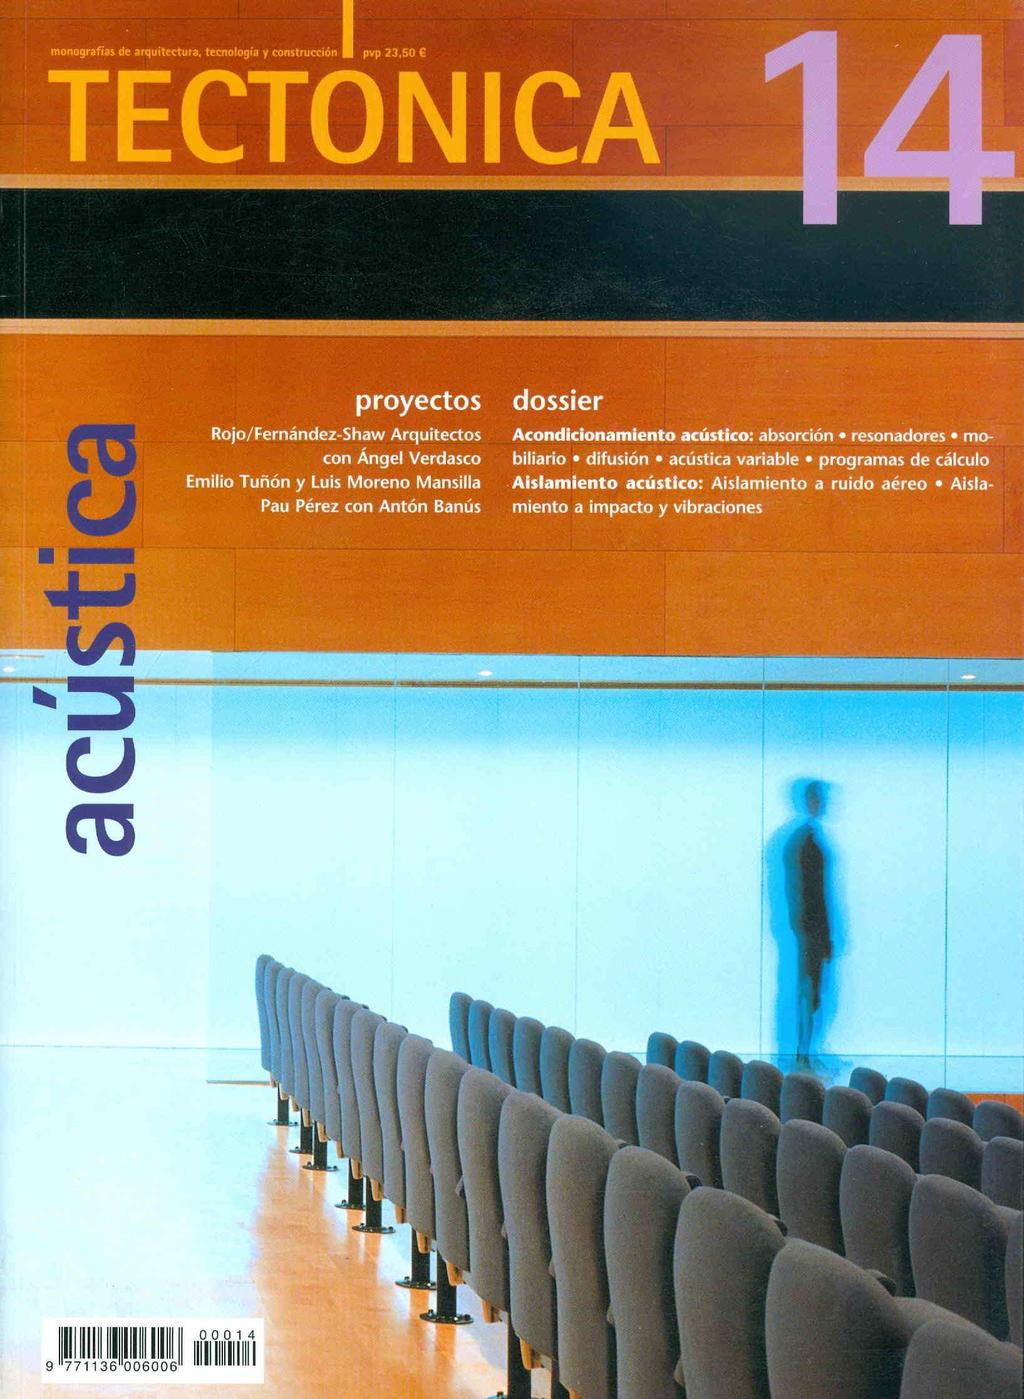 Tectónica Monografia de arquitectura, tecnologia y construcción. (Editora ATC, Madrid, 1995) P. 4 Introducción a la acústica arquitectónica P.